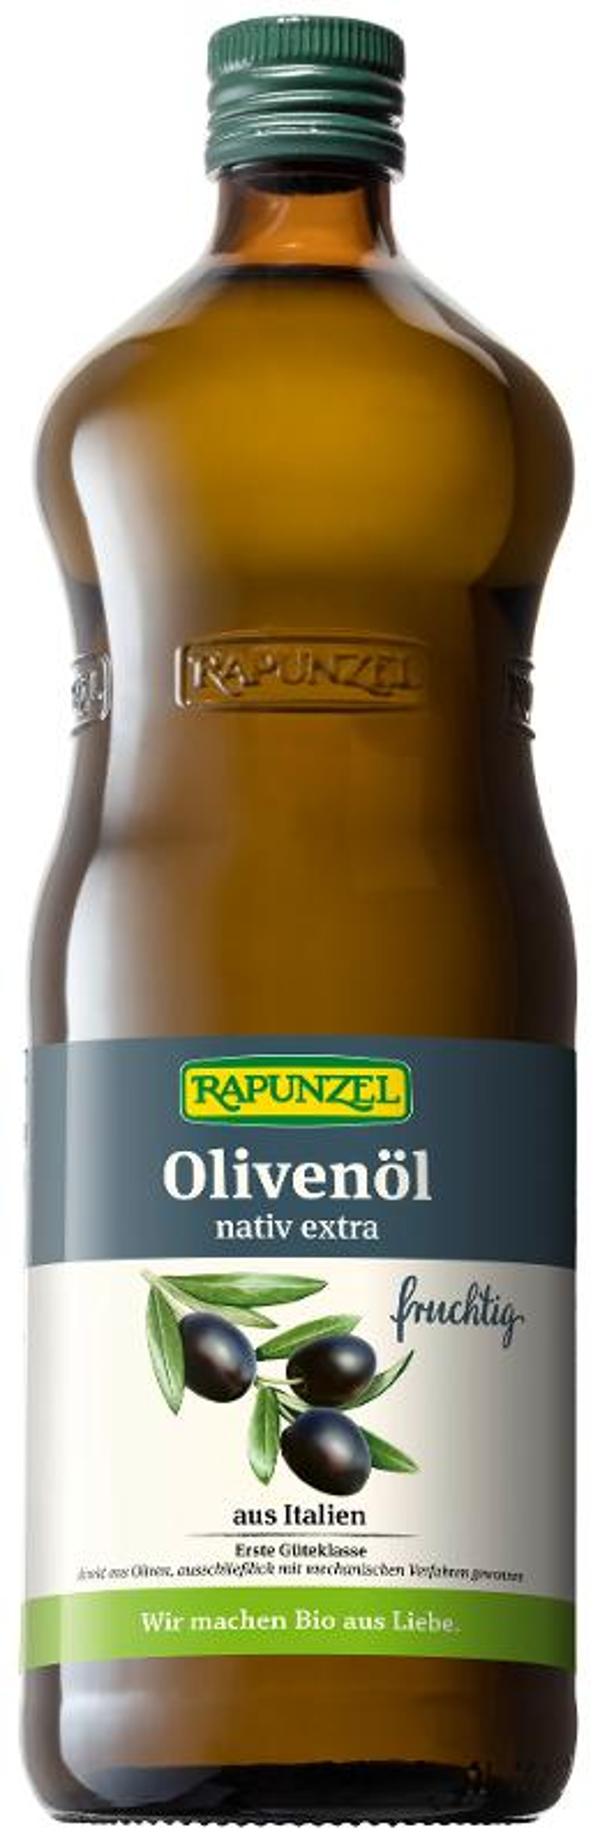 Produktfoto zu Olivenöl fruchtig nativ extra